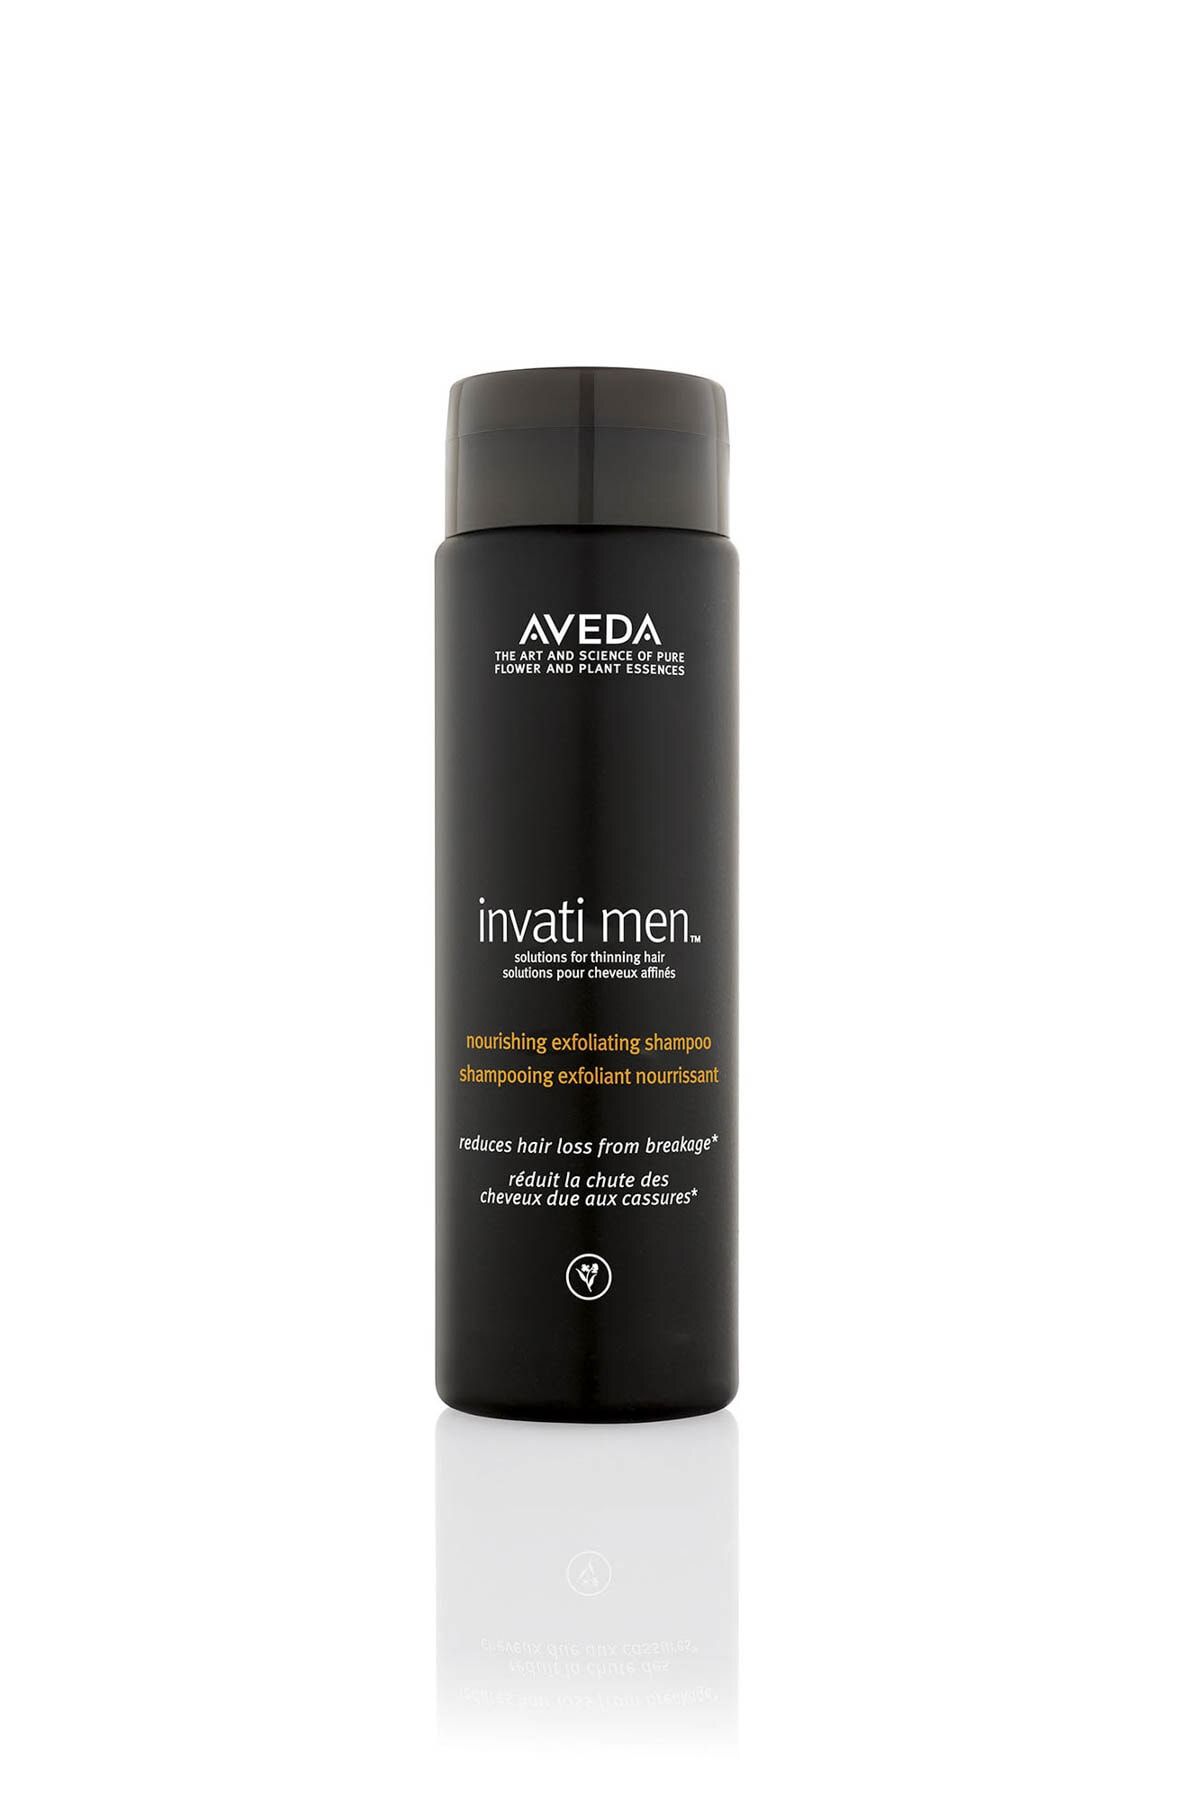 Aveda Invati Men Erkekler için Dökülme Karşıtı Şampuan 250ml